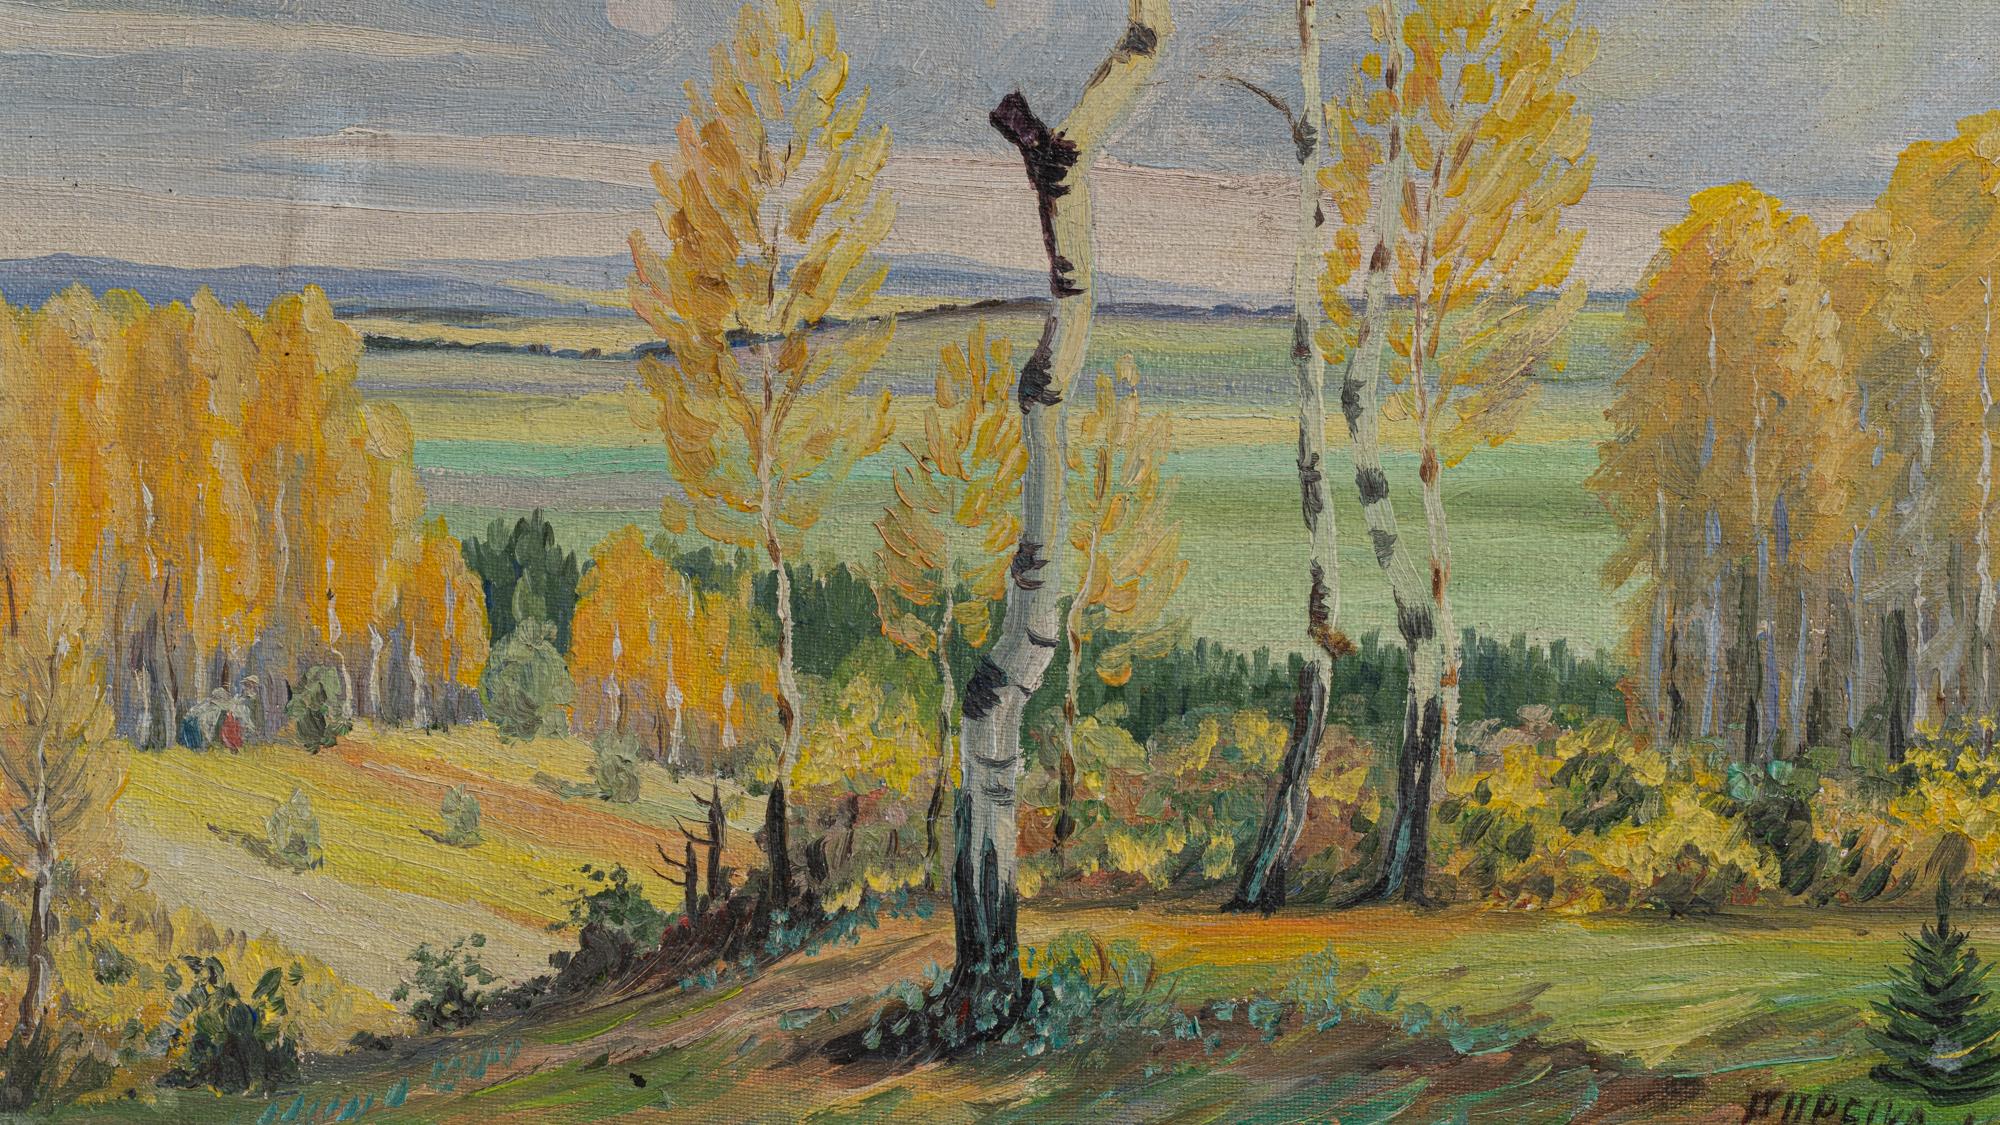 Baignée dans la chaude lueur de l'automne, cette peinture belge du début du 20e siècle capture l'essence de la splendeur de l'automne. La scène est une riche tapisserie d'arbres aux teintes dorées, qui se dressent fièrement, leurs feuilles dansant